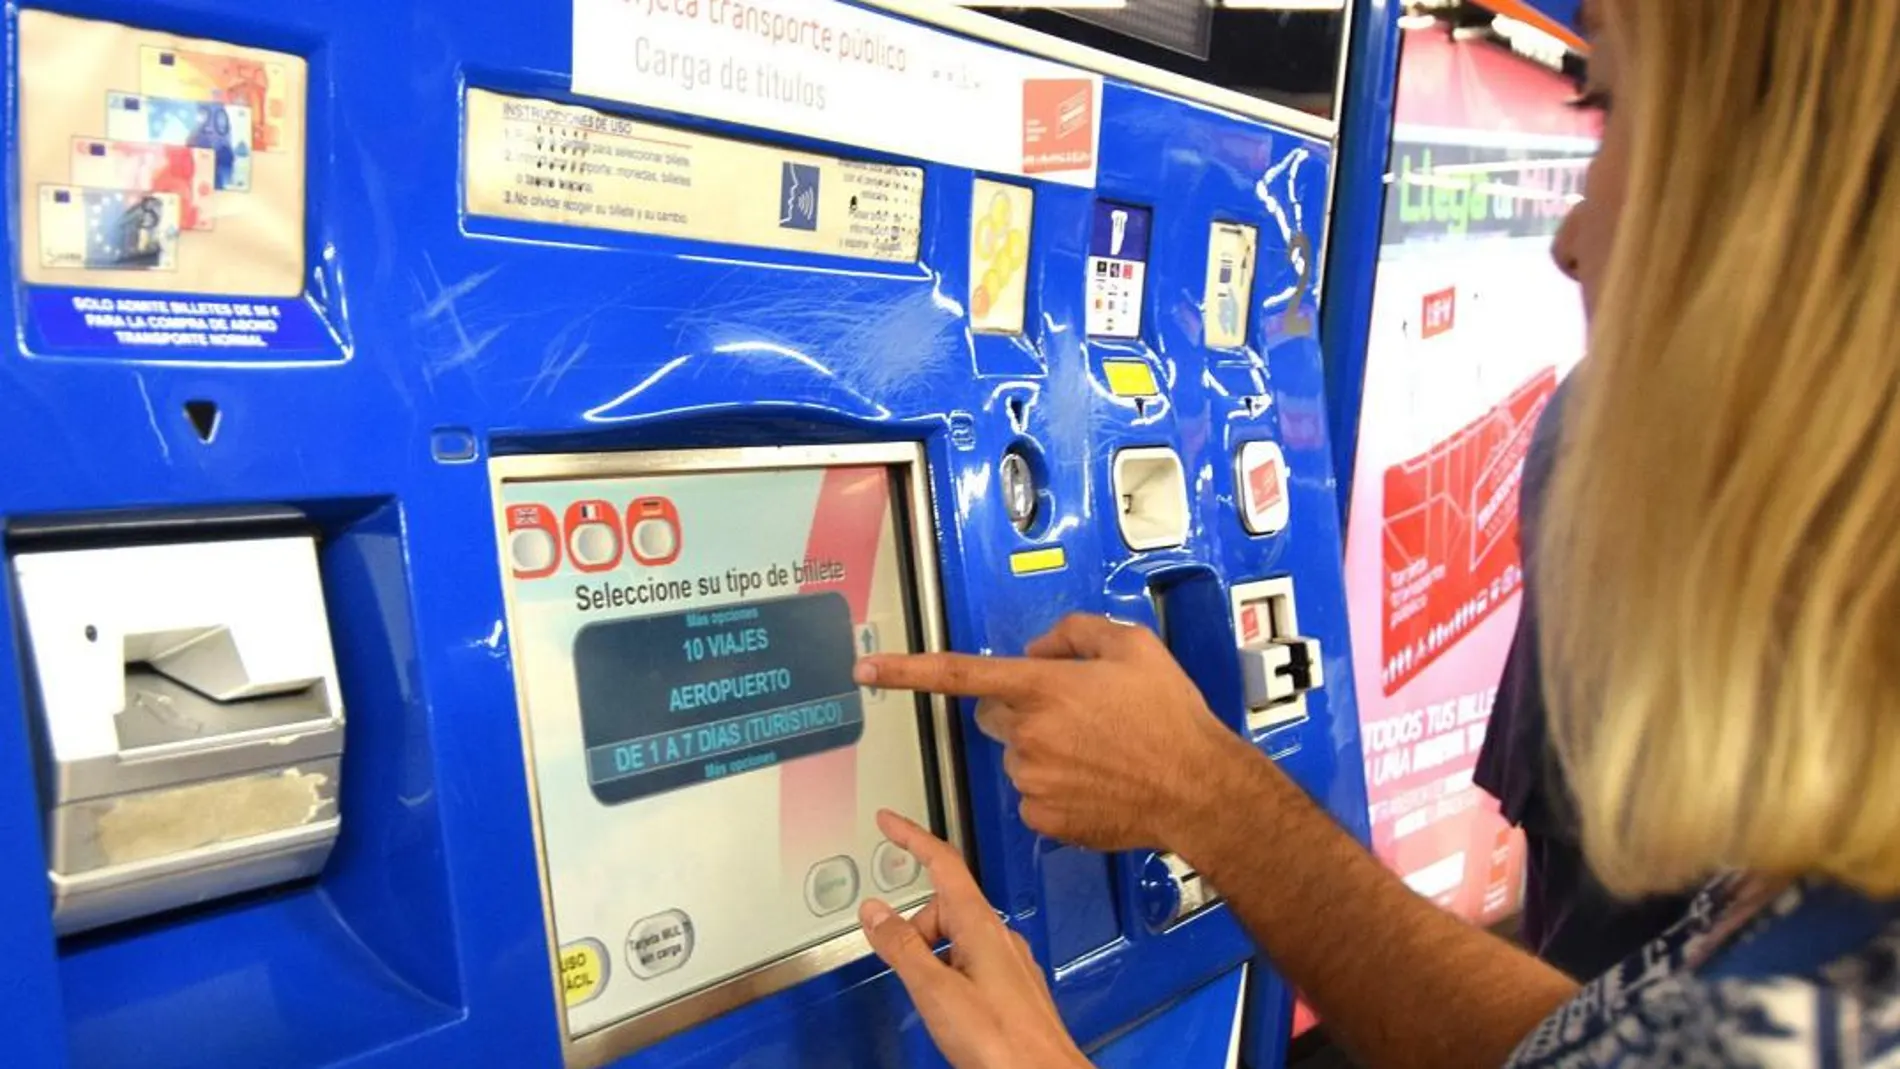 La Comunidad de Madrid diseñará un nuevo sistema para que las máquinas expendedoras de tarjetas de transporte de Metro en el aeropuerto puedan explicar de forma «más clara» el procedimiento de adquisición de los títulos de transporte